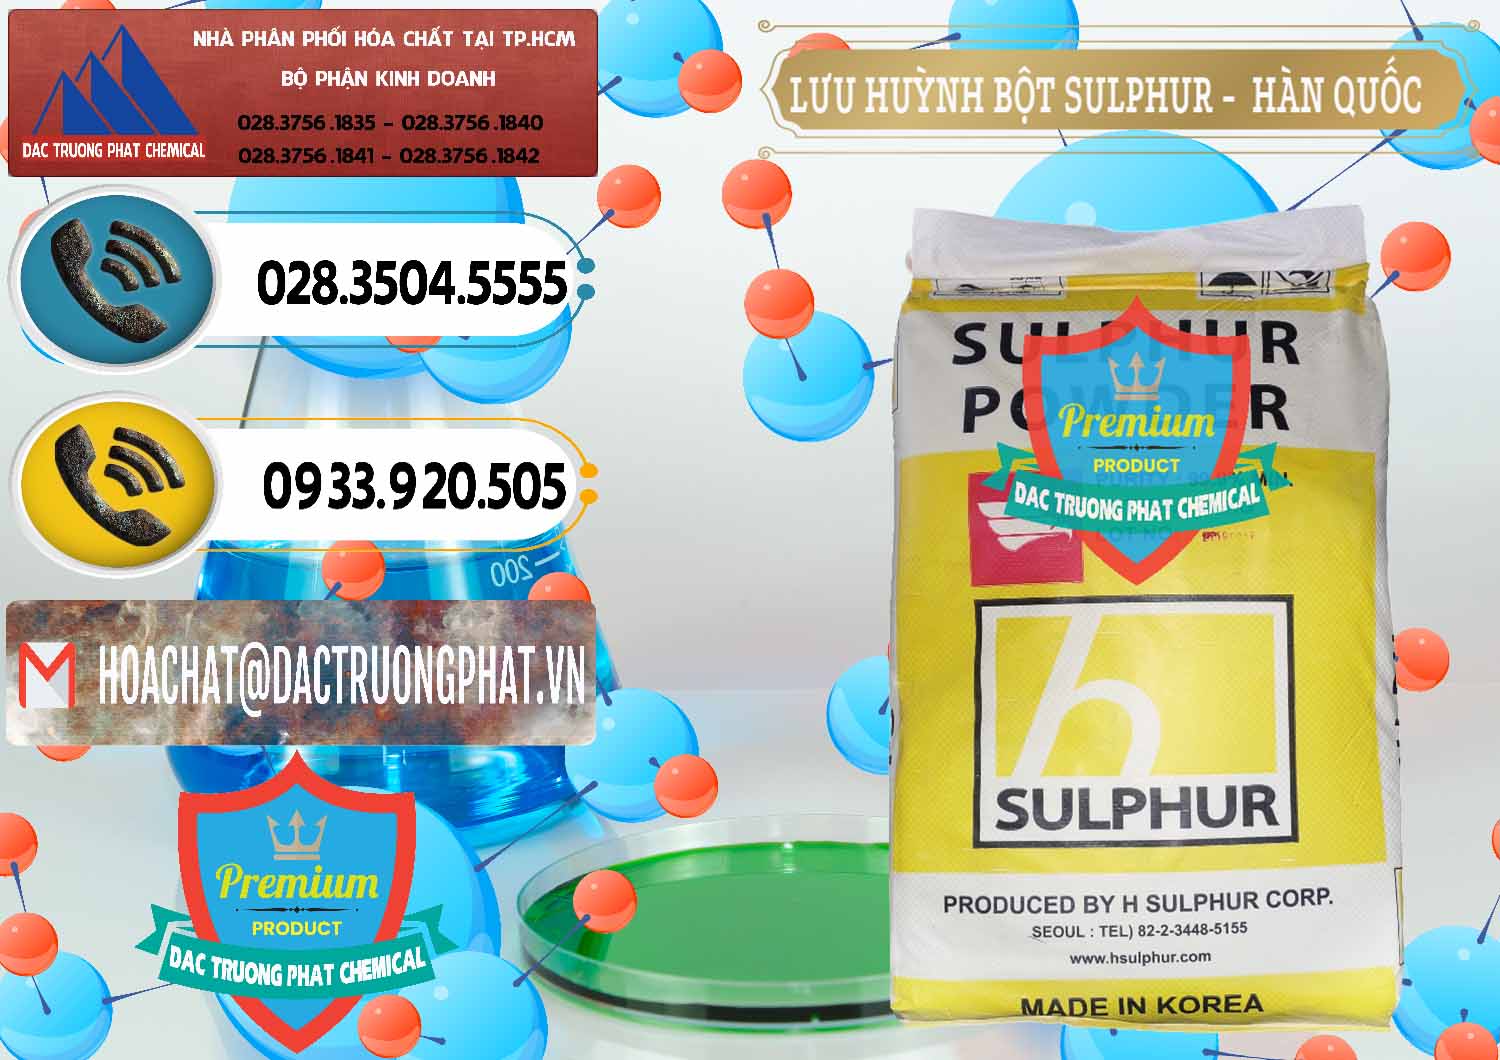 Cty chuyên cung ứng và bán Lưu huỳnh Bột - Sulfur Powder ( H Sulfur ) Hàn Quốc Korea - 0199 - Công ty bán và cung cấp hóa chất tại TP.HCM - hoachatdetnhuom.vn